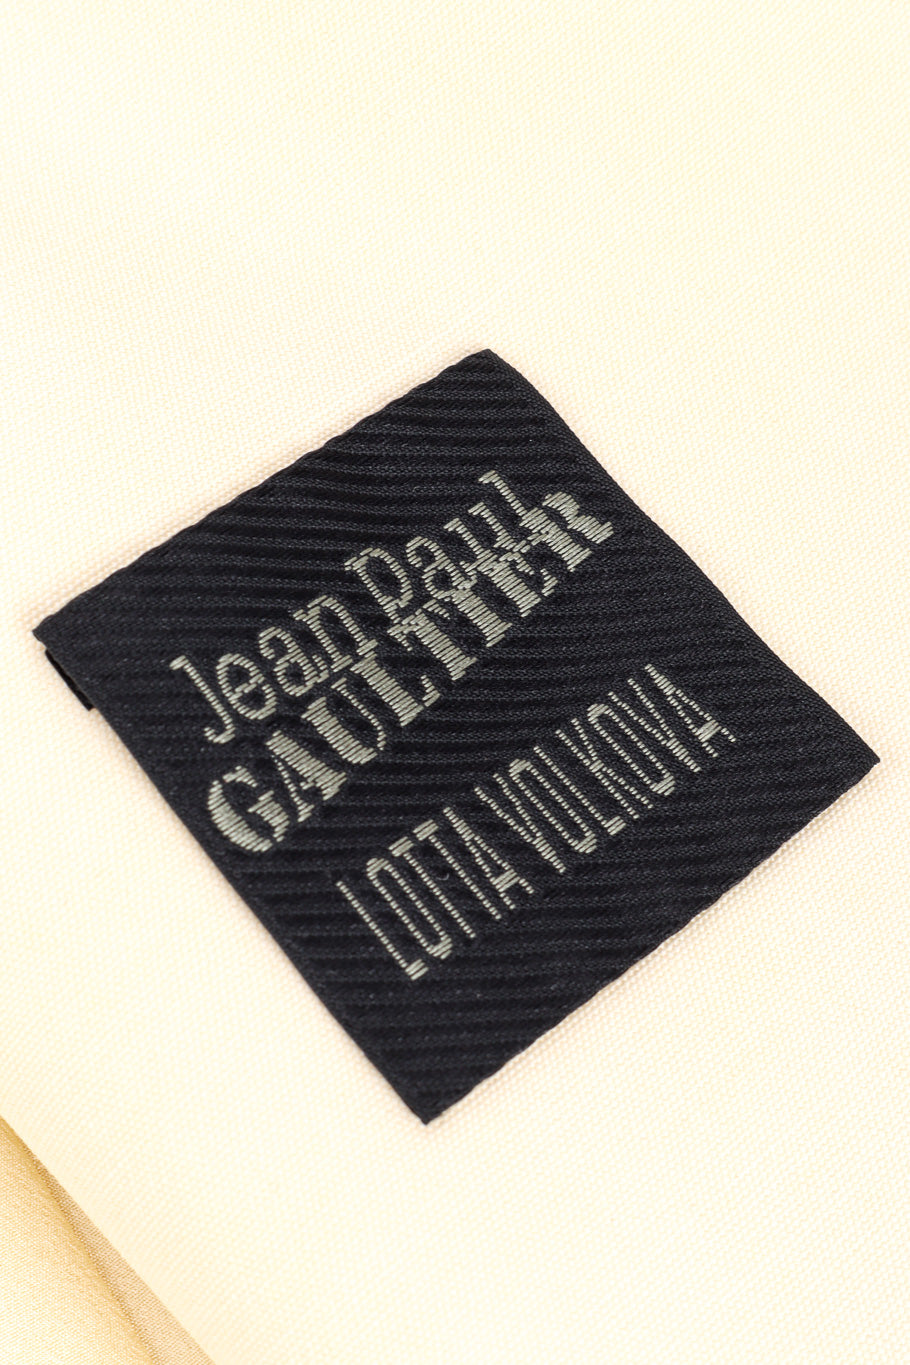 Jean Paul Gaultier Open Back Blazer signature label closeup @recessla